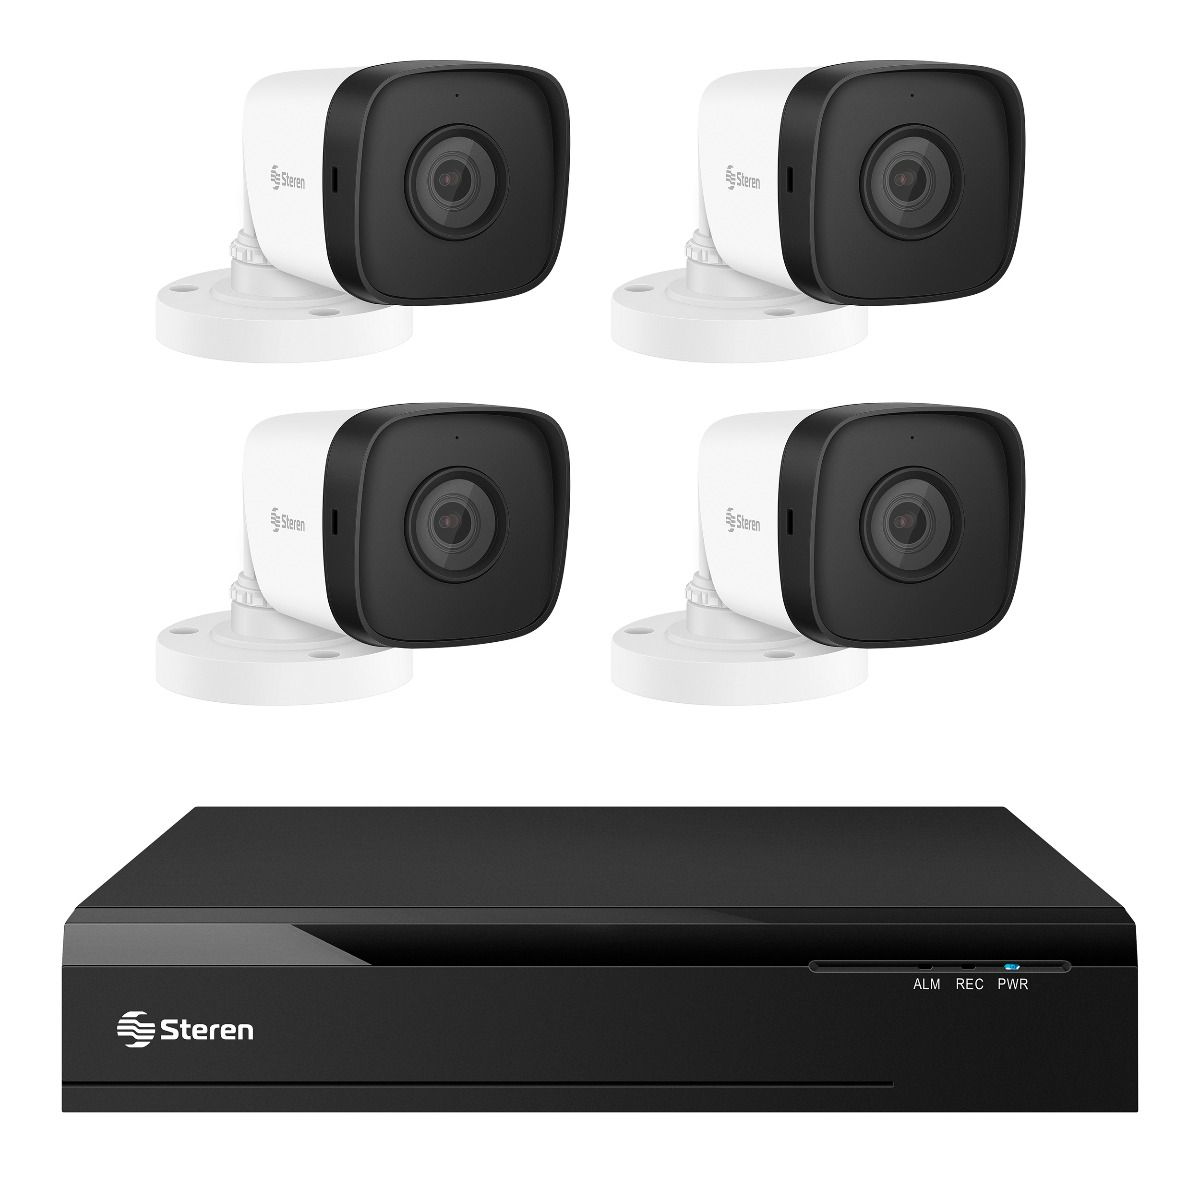 DVR Híbrido canales con 4 cámaras, disco duro y monitoreo por Internet